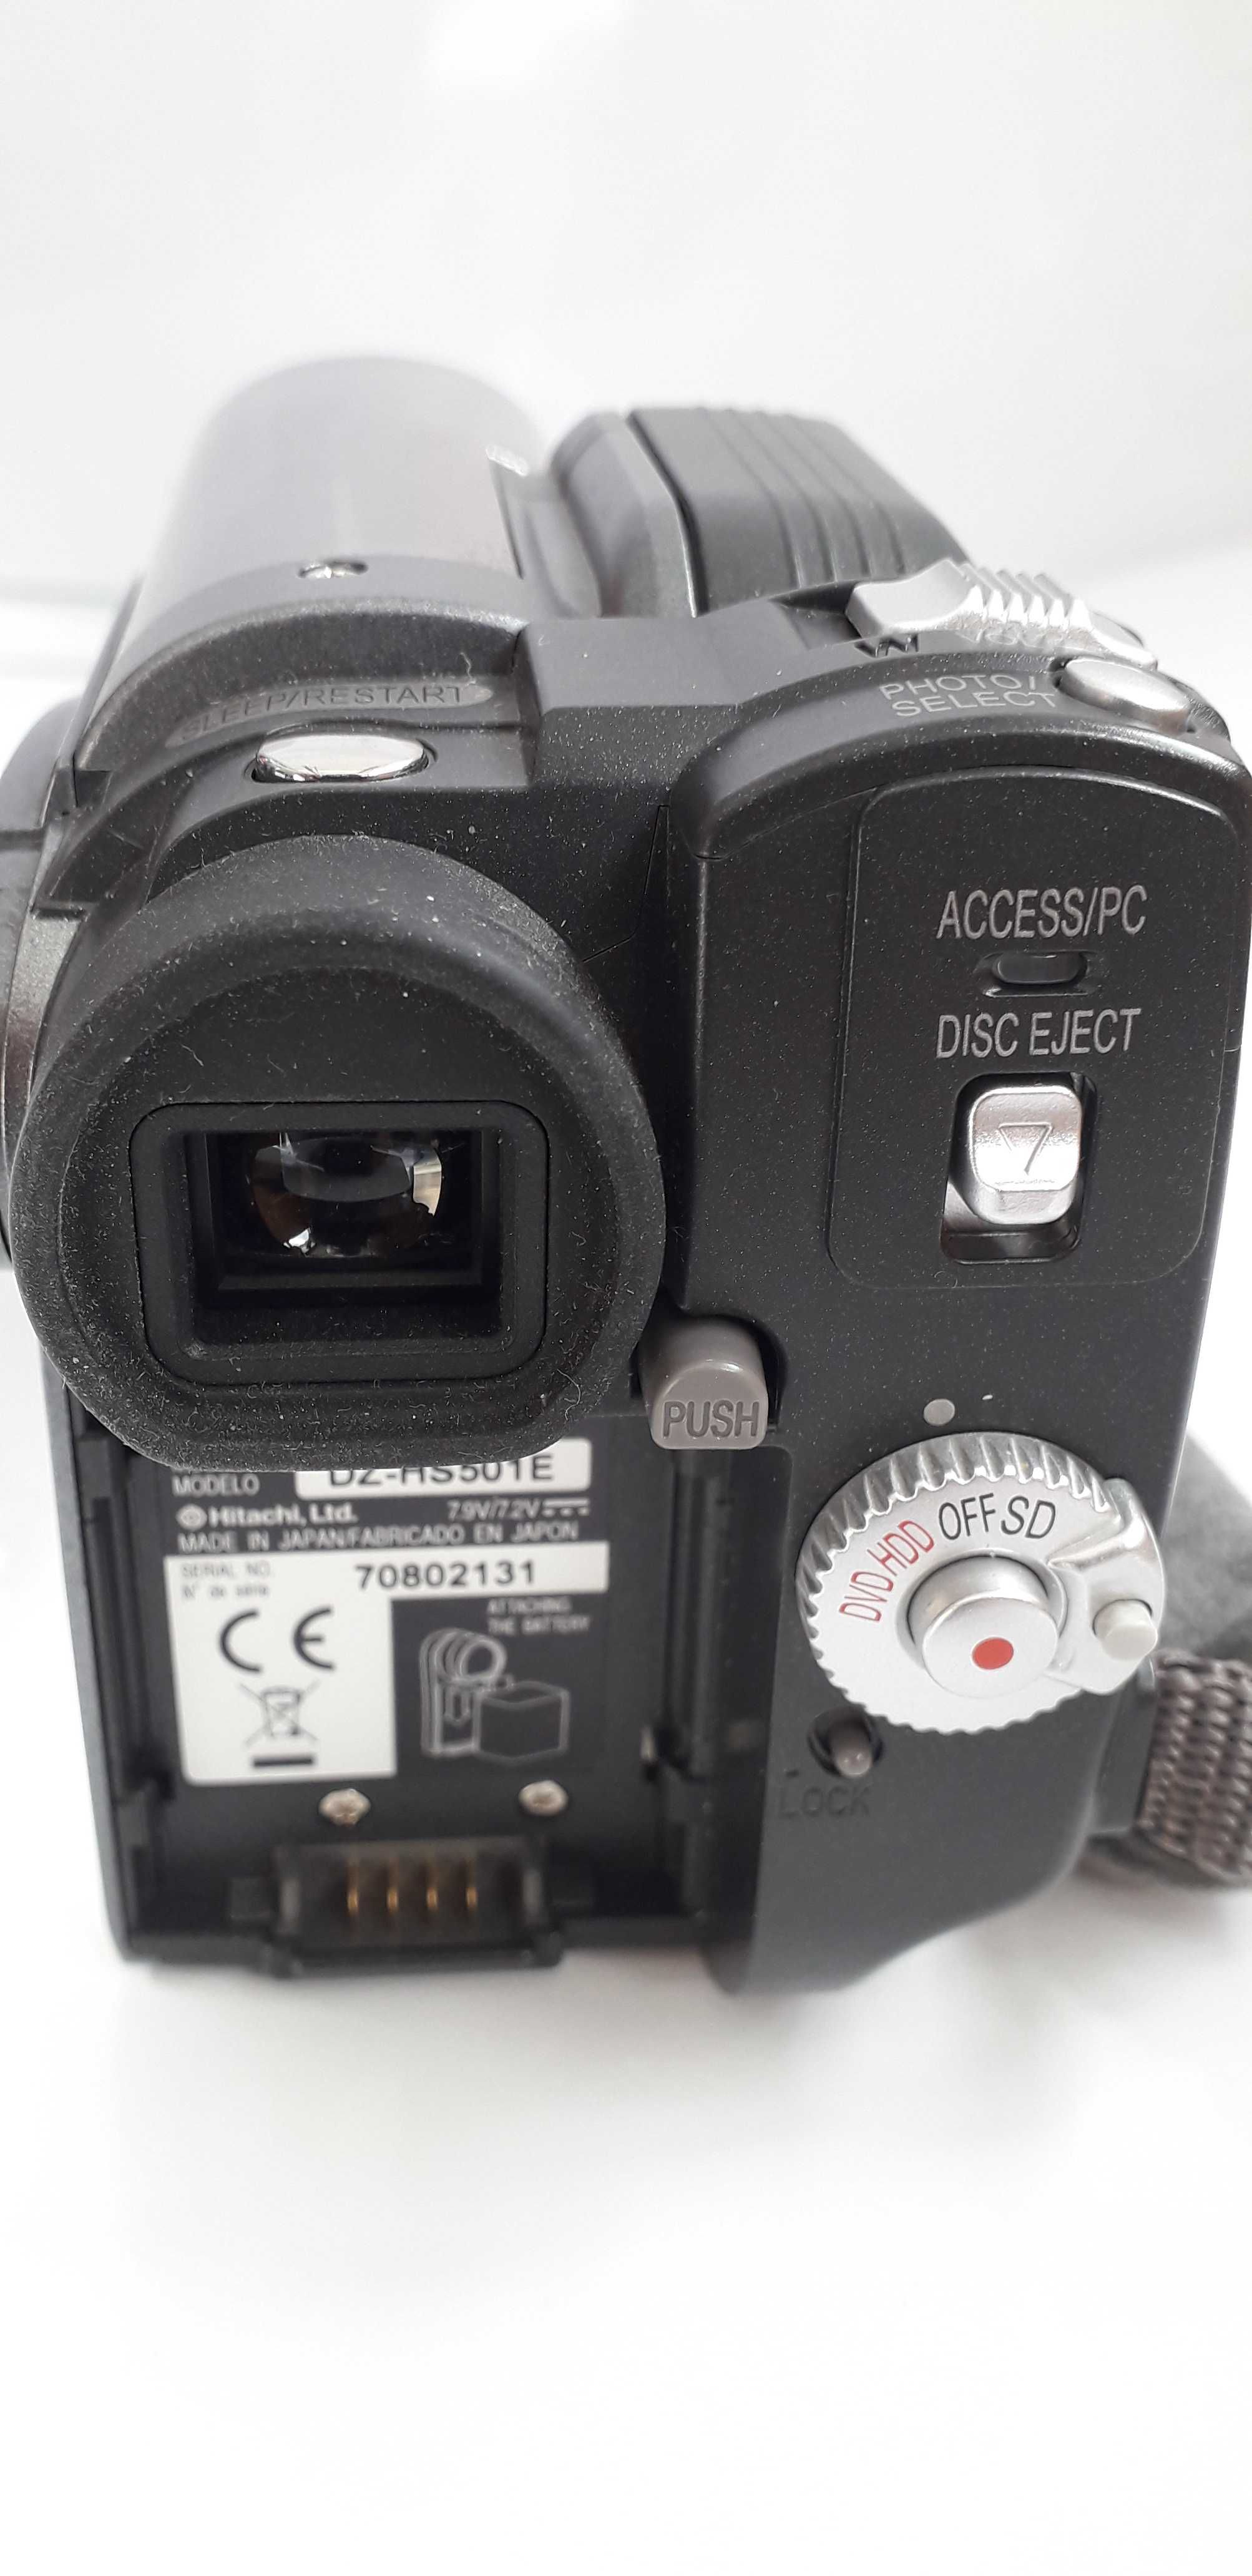 Camera video Hitachi model dz – hs501e